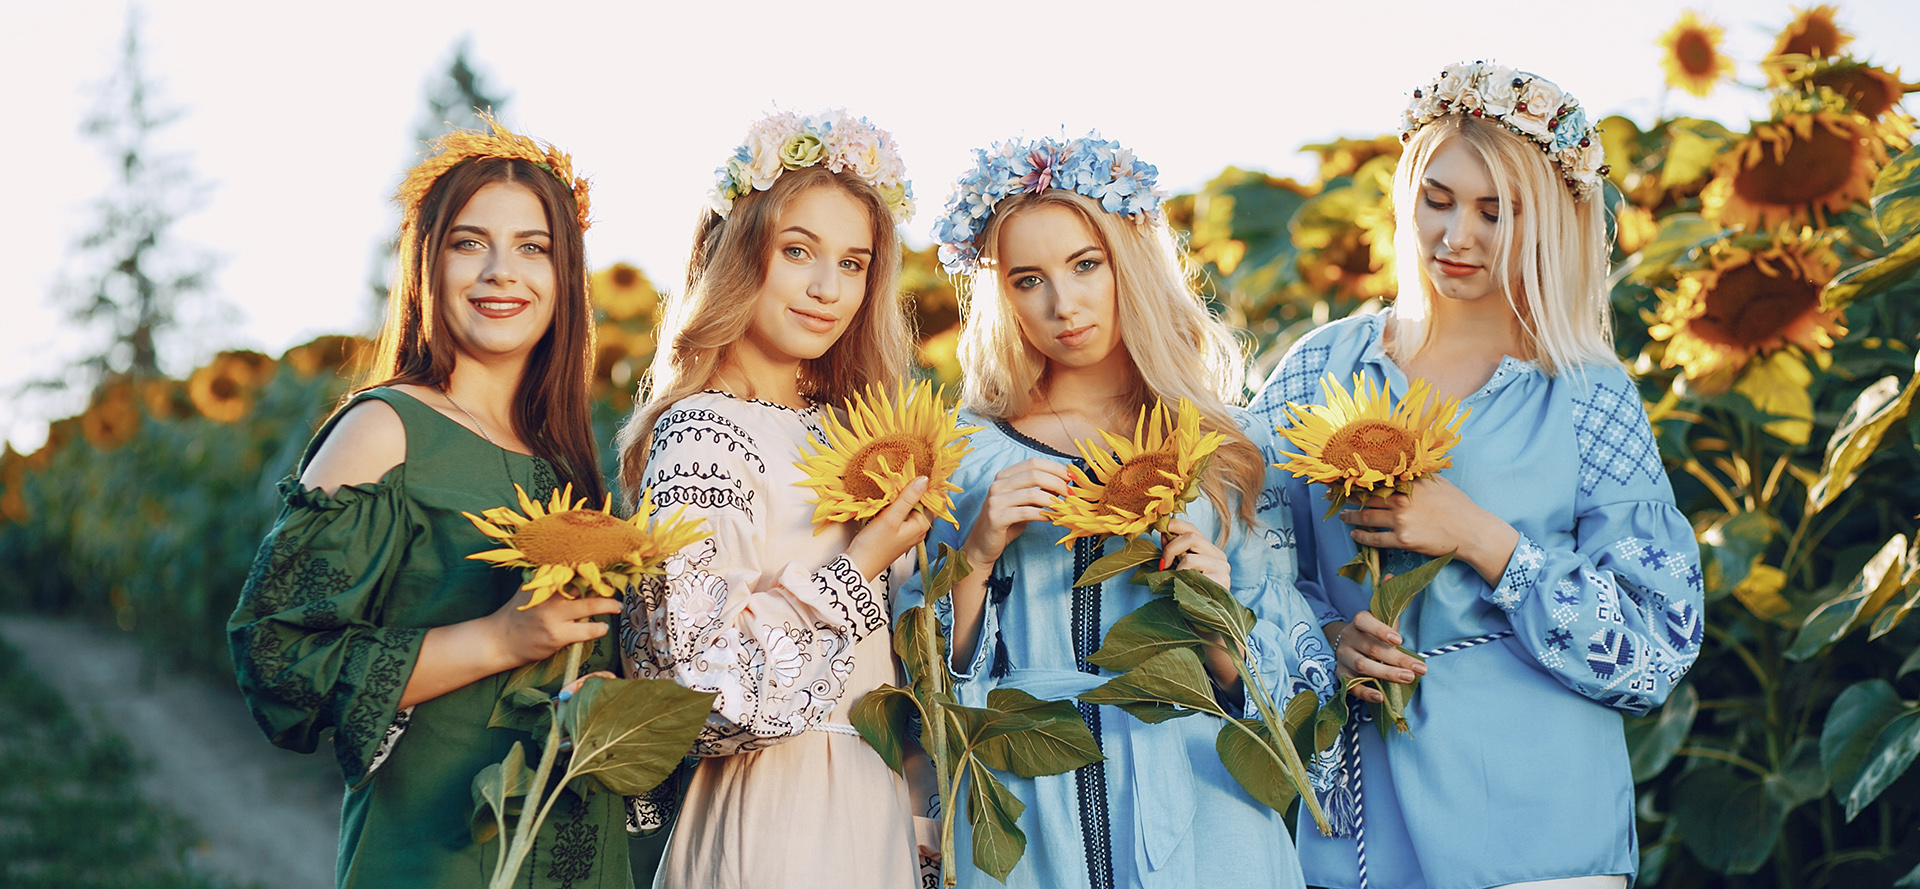 Kauniit sinkku ukrainalaiset naiset auringonkukat käsissään.